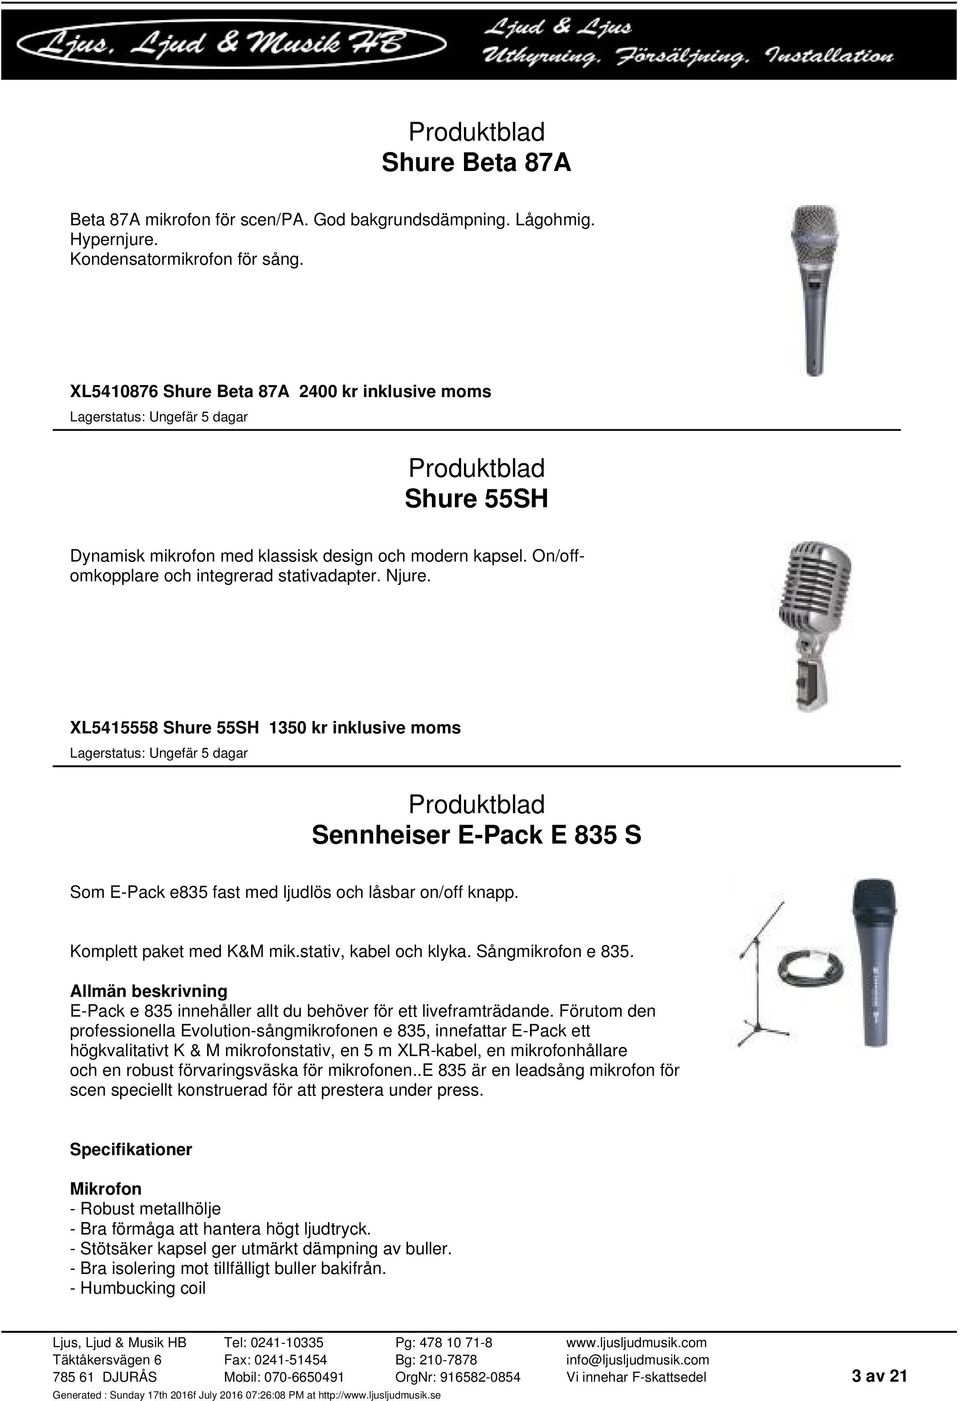 XL5415558 Shure 55SH 1350 kr inklusive moms Sennheiser E-Pack E 835 S Som E-Pack e835 fast med ljudlös och låsbar on/off knapp. Komplett paket med K&M mik.stativ, kabel och klyka. Sångmikrofon e 835.